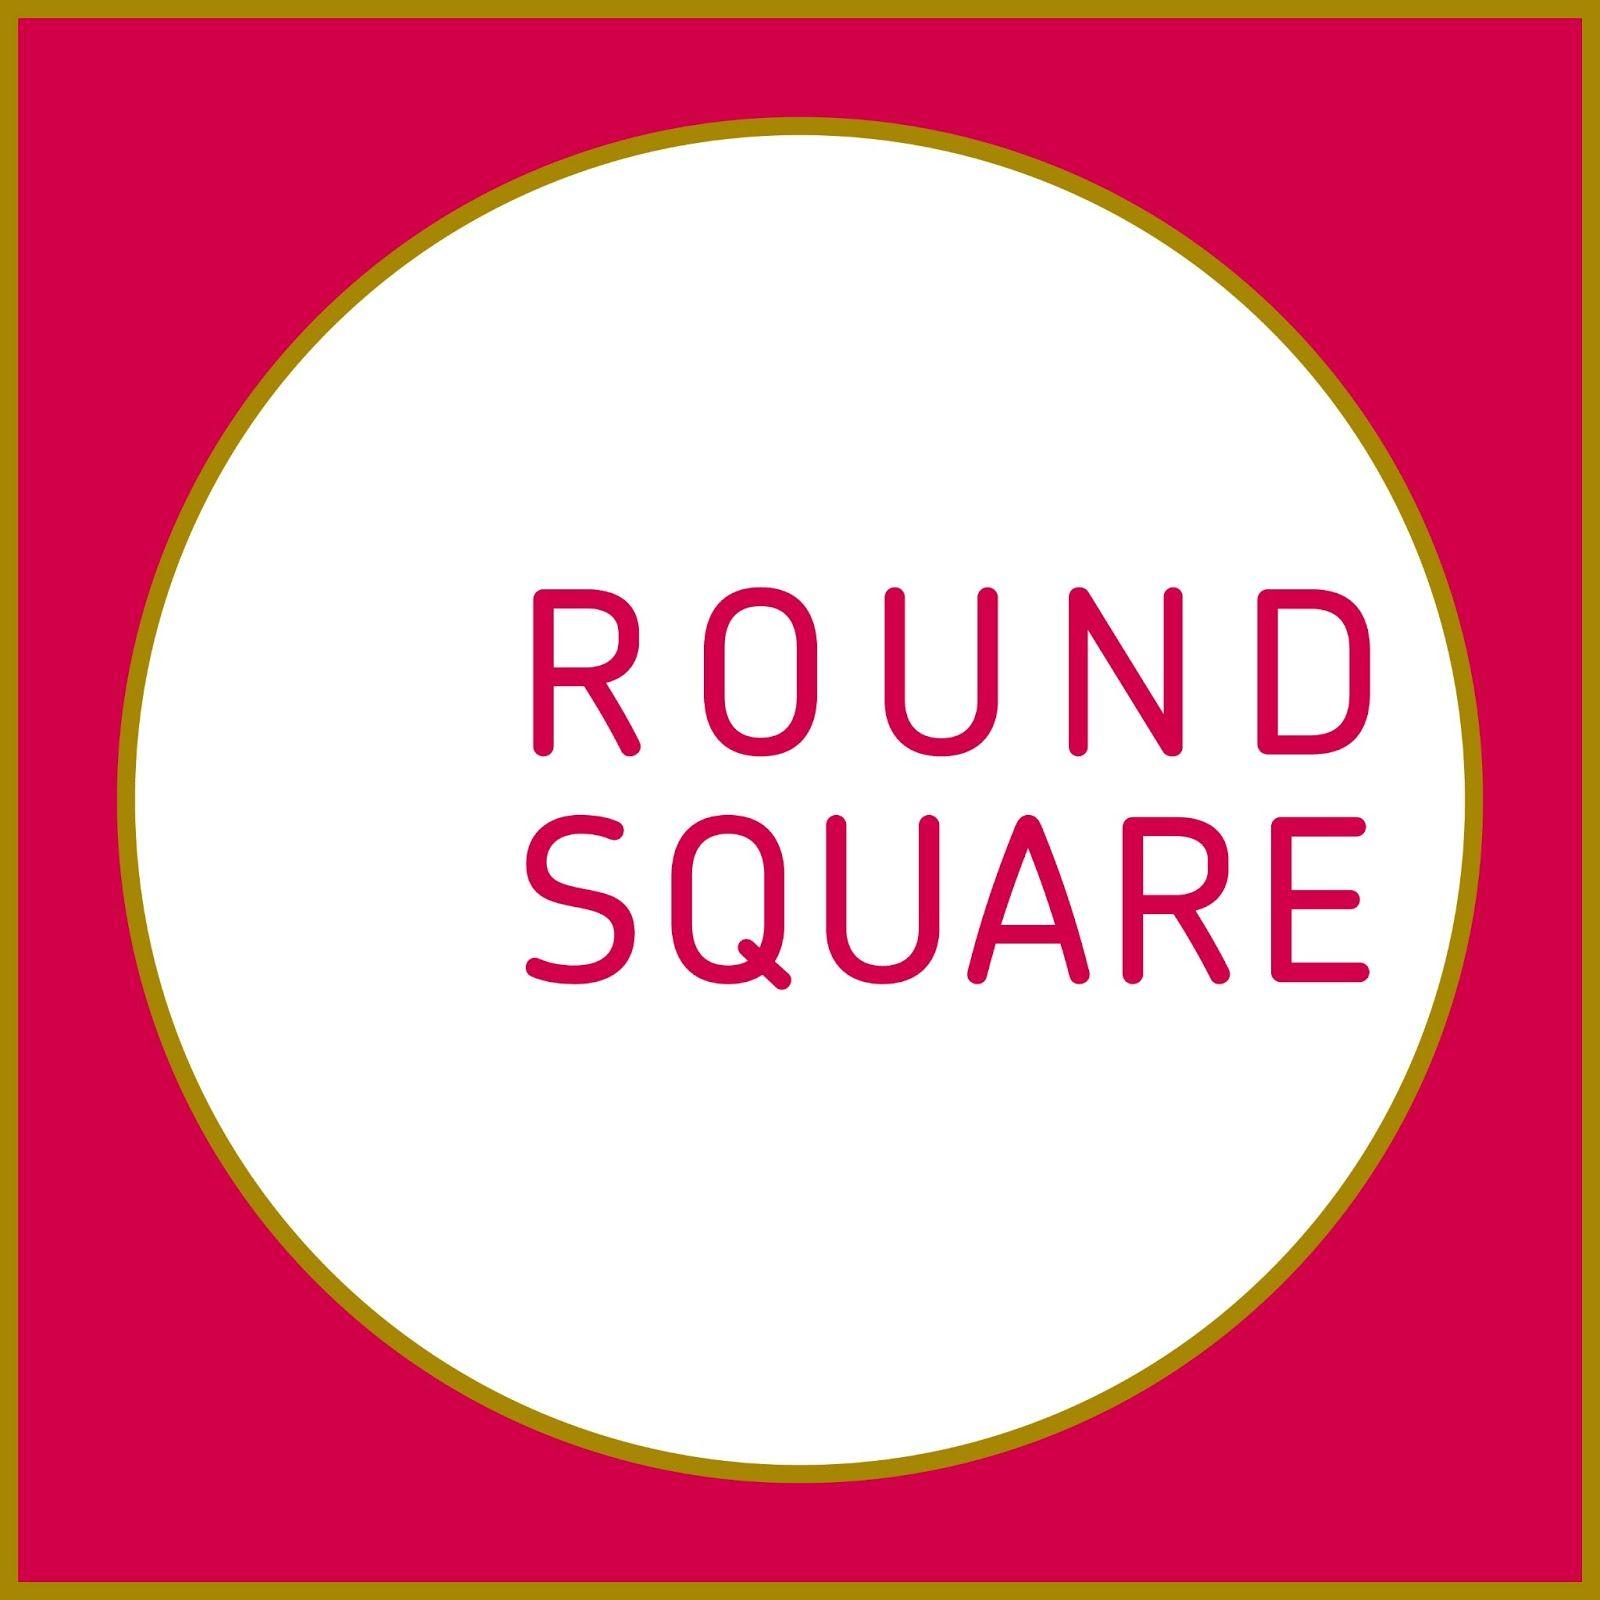 Round Square Logo - Round Square Design Project for grade 8's.